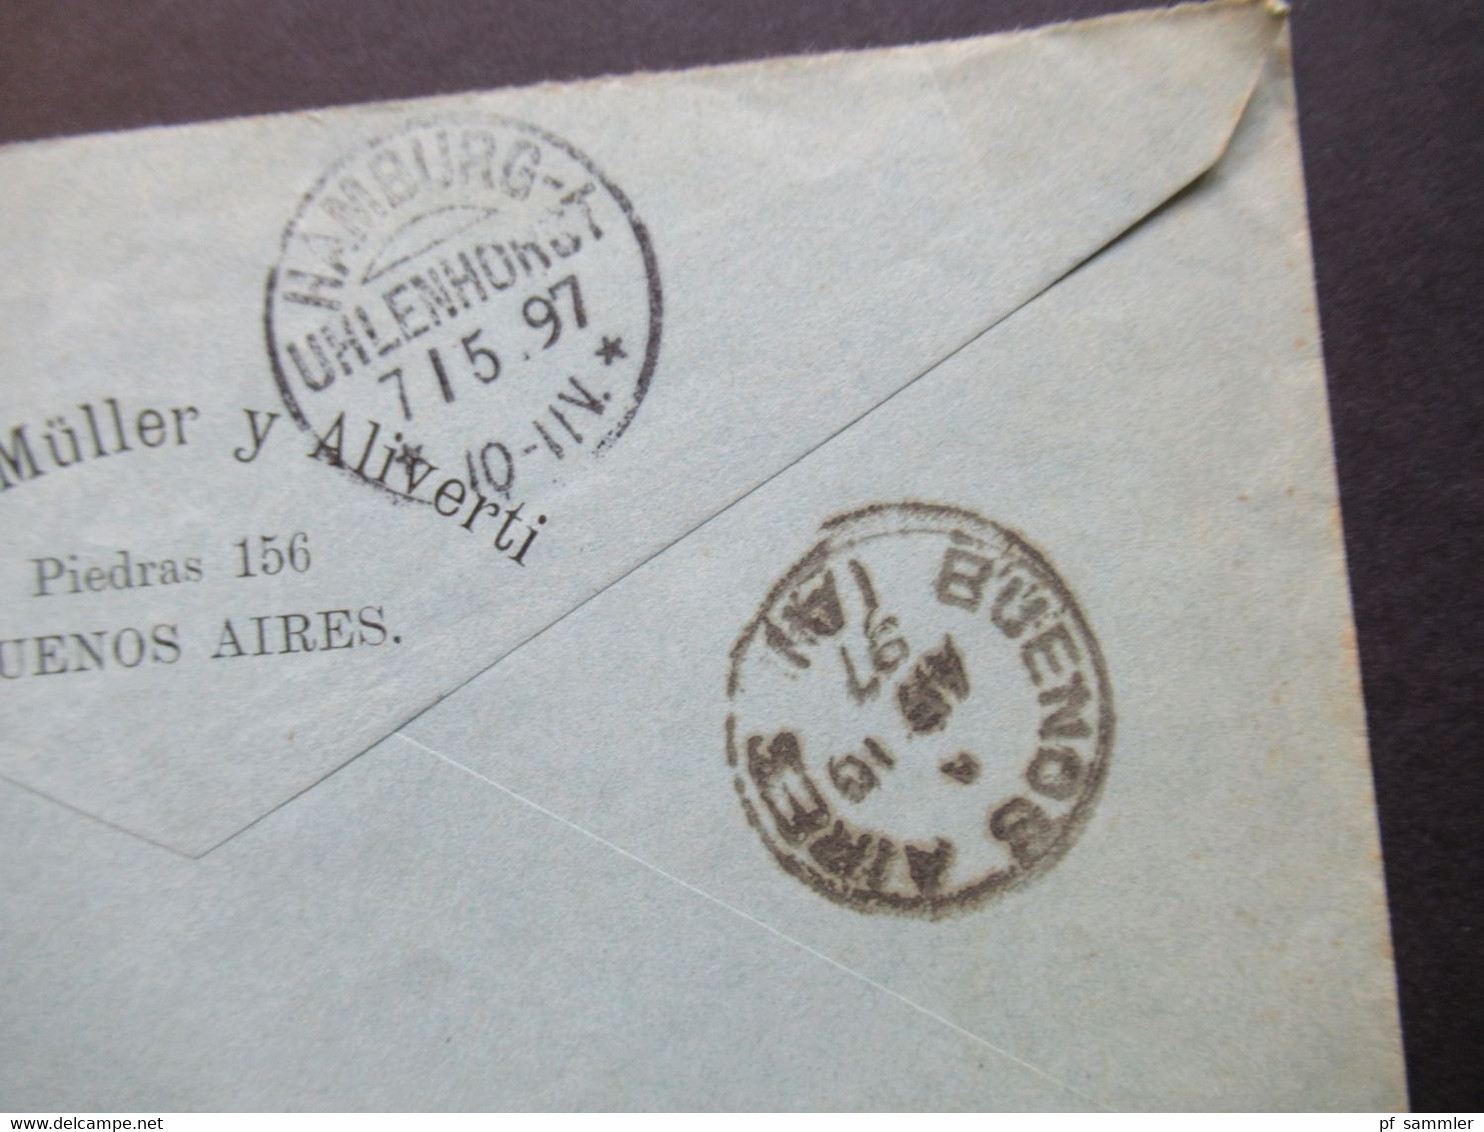 Argentinien 1897 Por Vapor Nile Nach HH Mit KOS Hamburg Uhlenhorst Umschlag Adolfo Müller Y Aliverti Buenos Aires - Cartas & Documentos